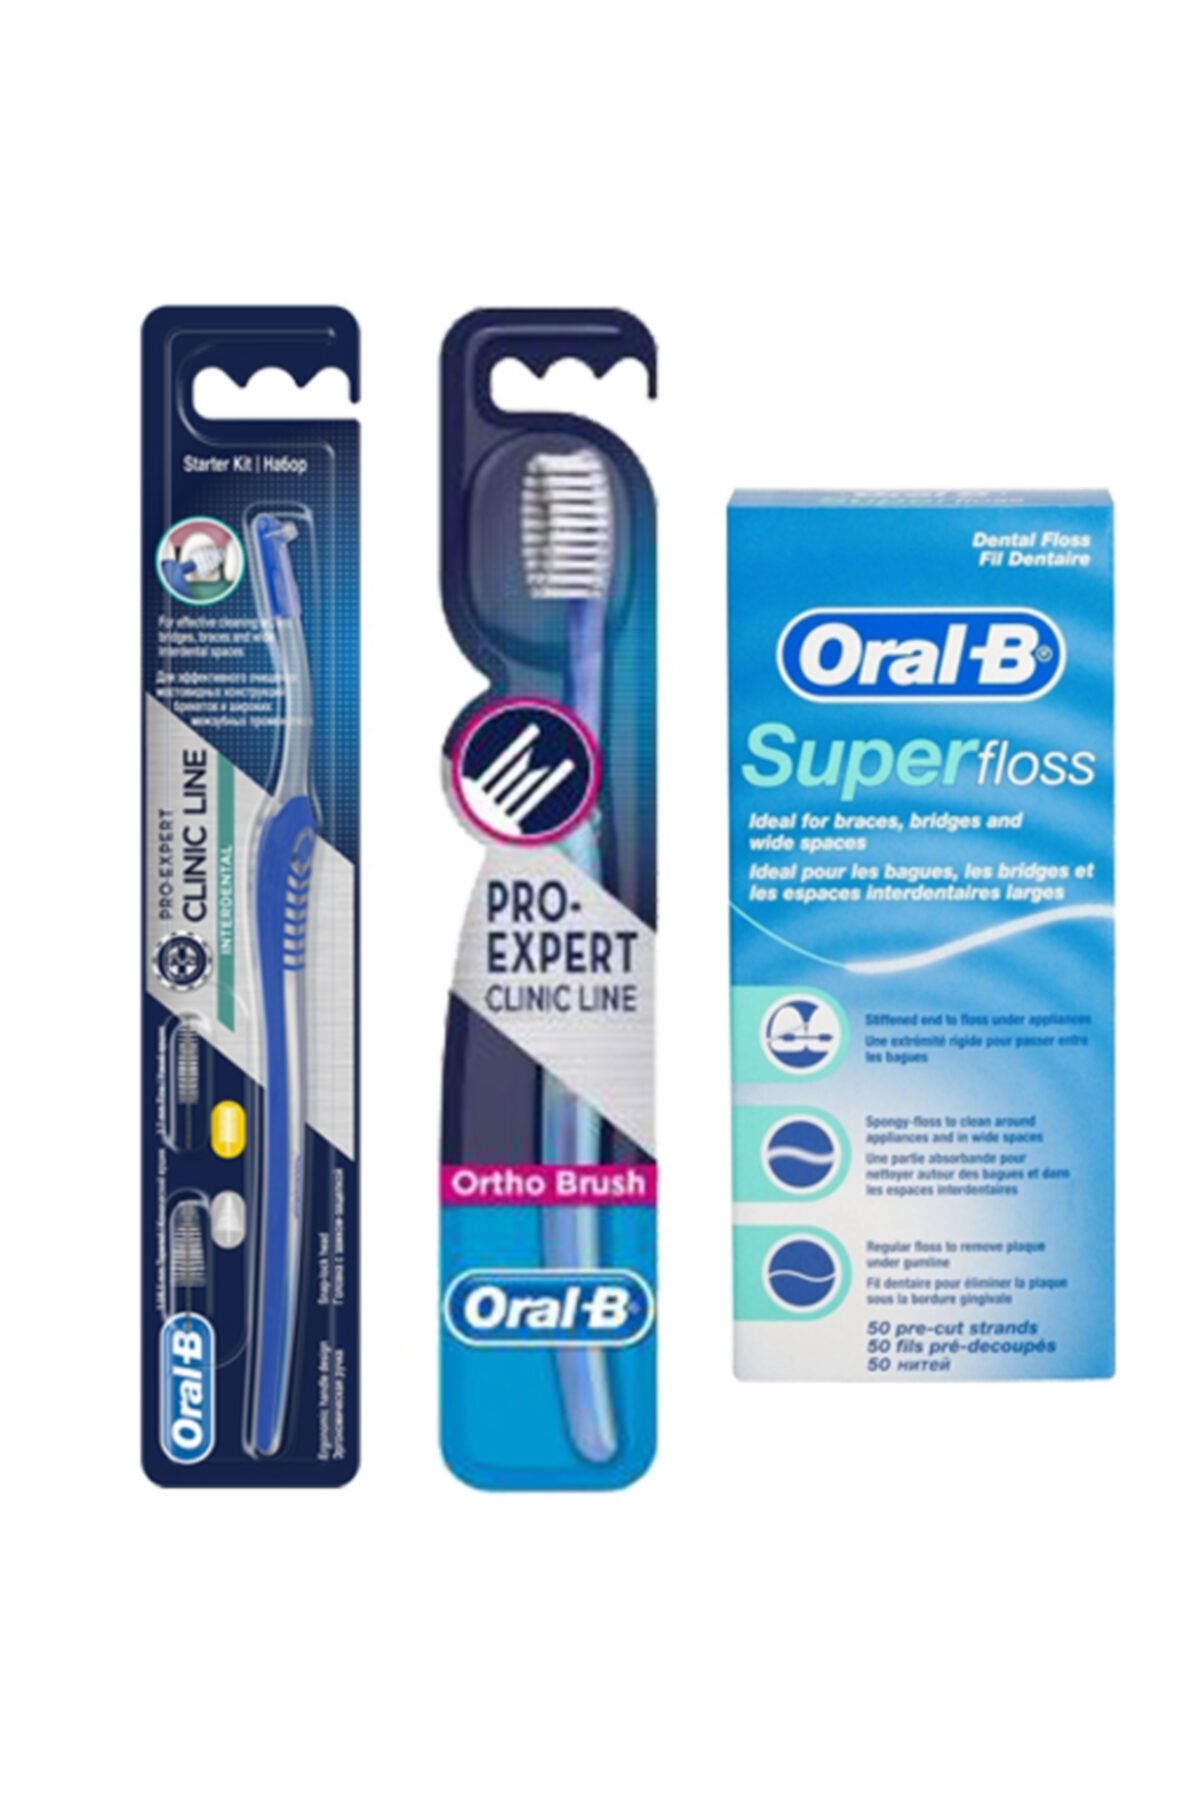 Oral-B Arayüz Diş Fırçası + Ortodontik Diş Fırçası 35 Soft  + Super Floss Diş Ipi 50 Adet